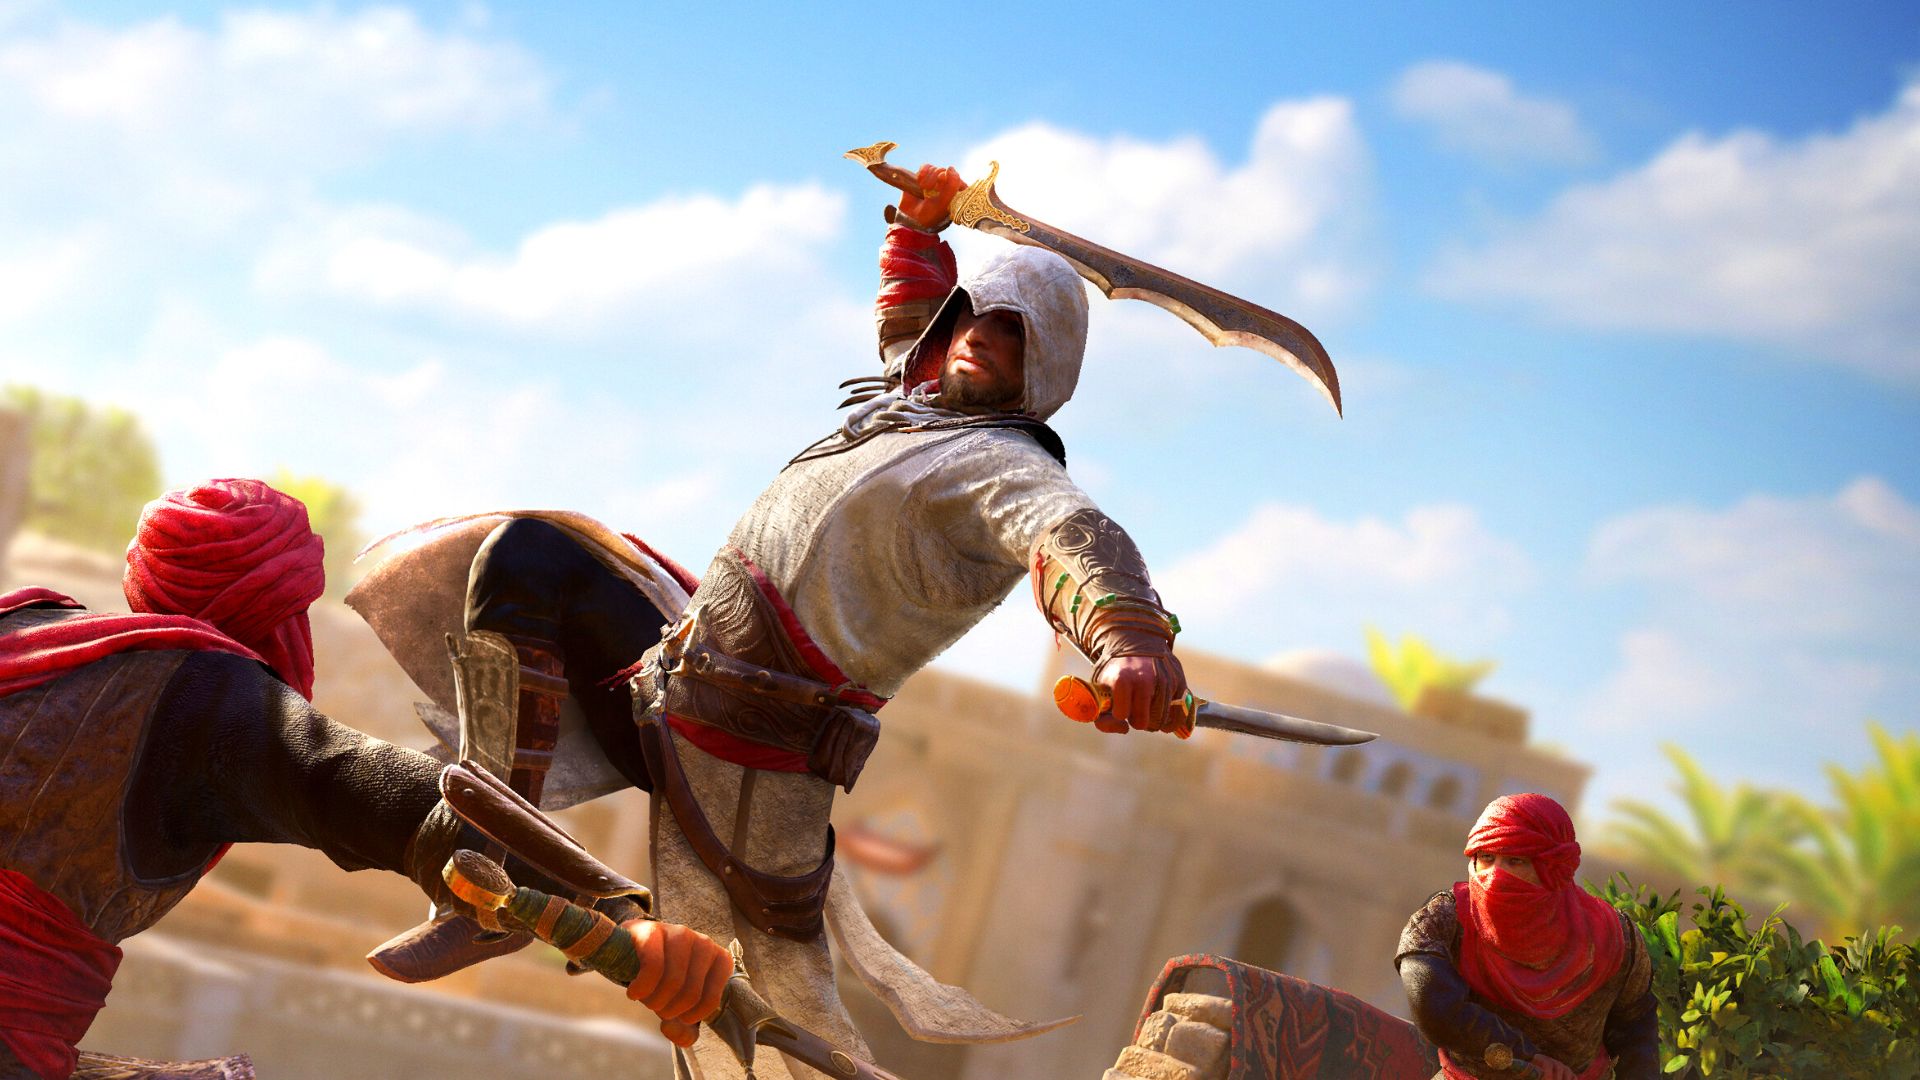 Le parkour Assassin's Creed Mirage s'inspirera de Unity selon Ubisoft